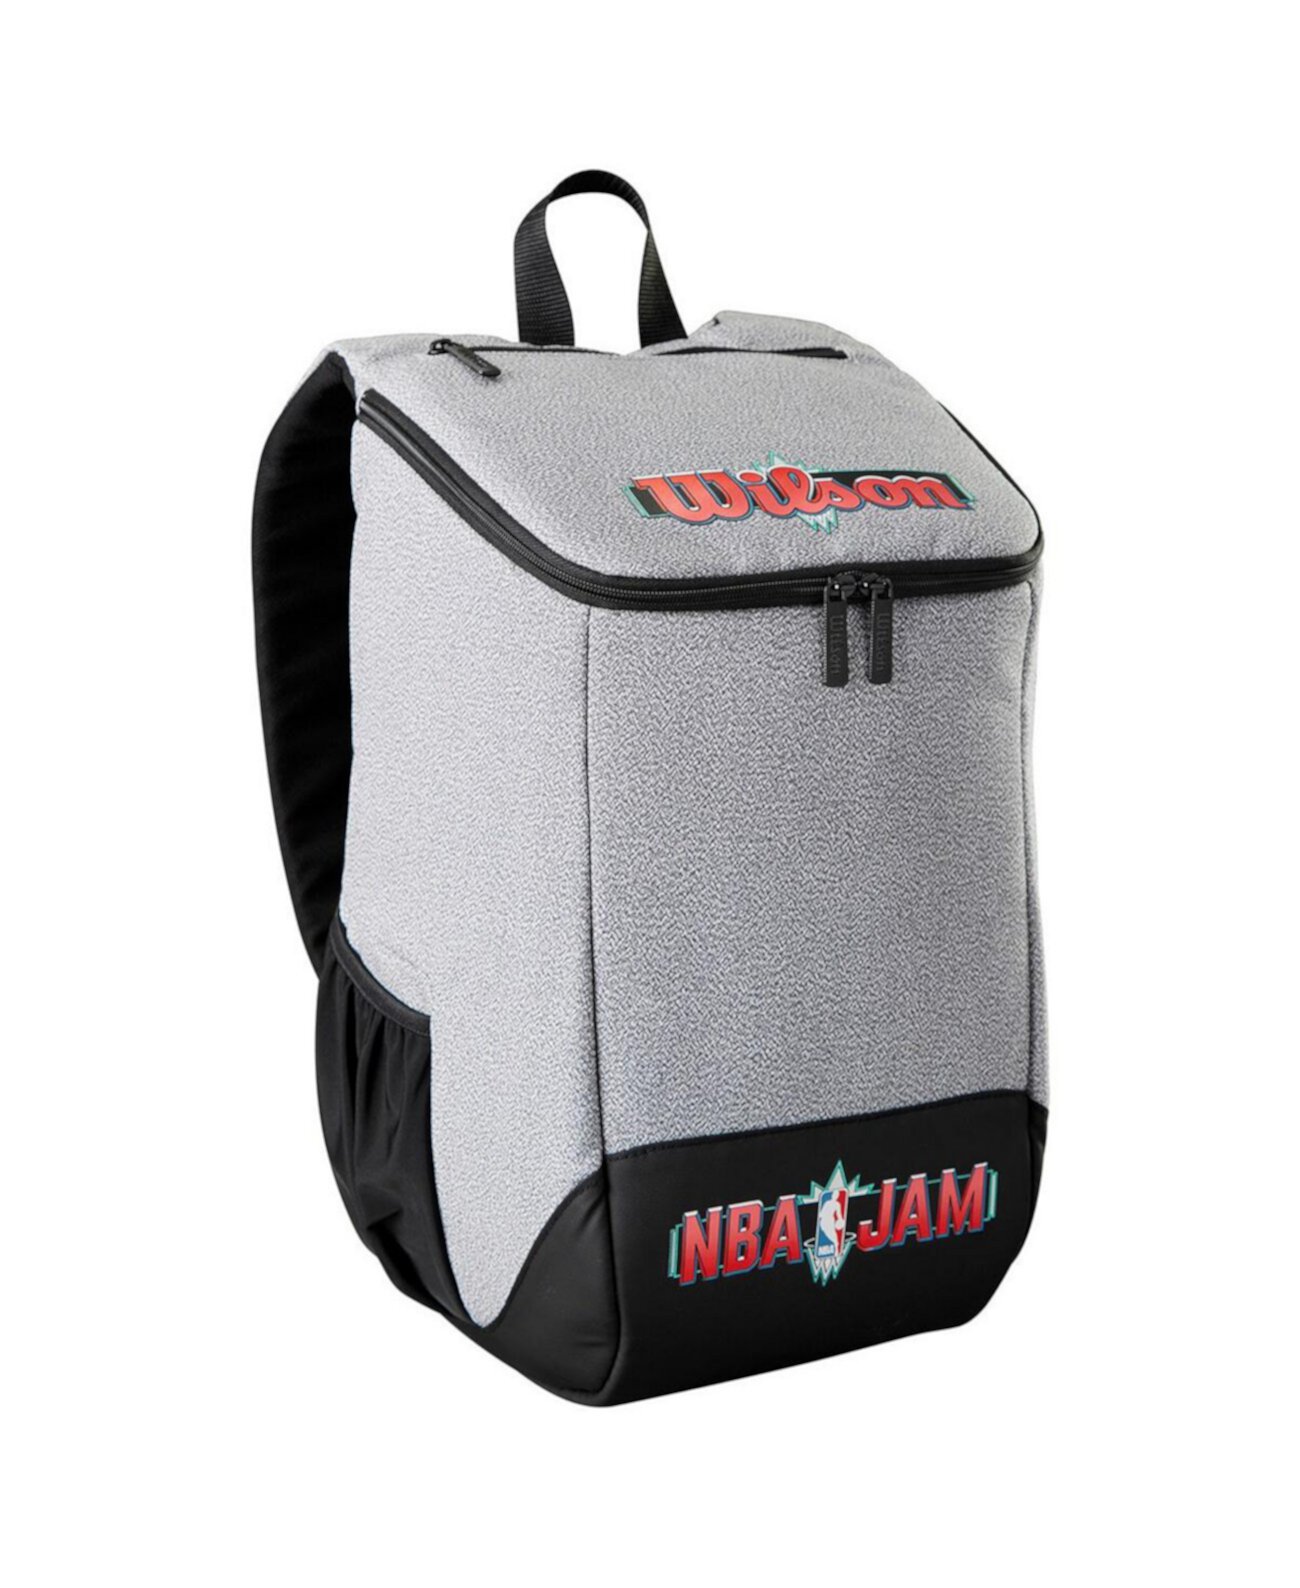 Аутентичный рюкзак NBA Jam для мальчиков и девочек Wilson